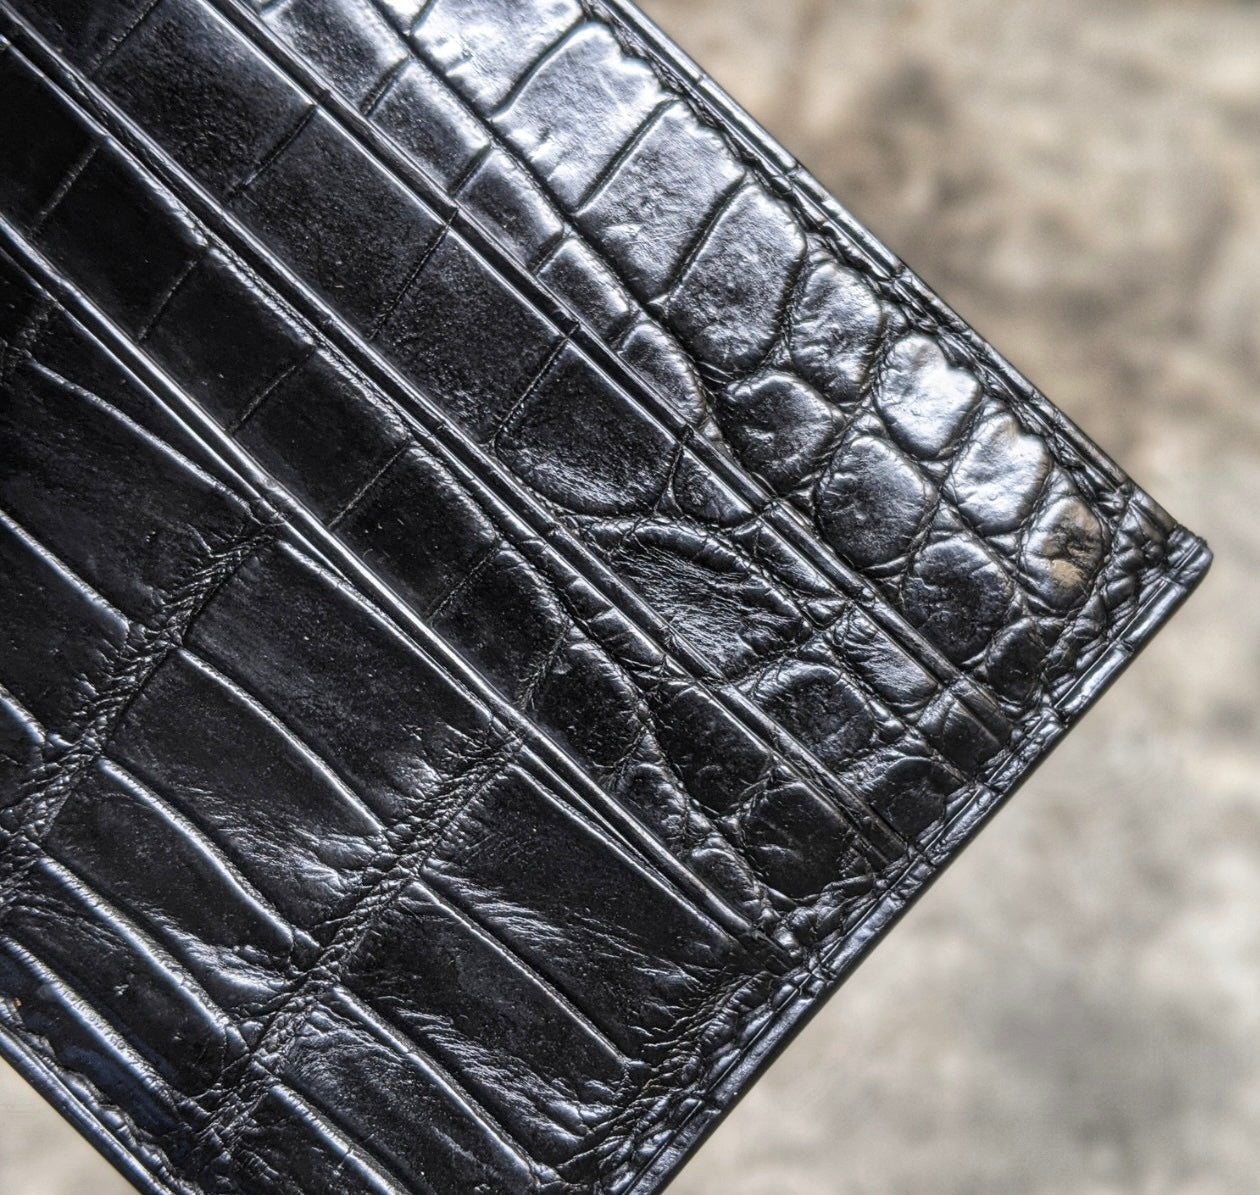 Black Alligator Leather Wallet